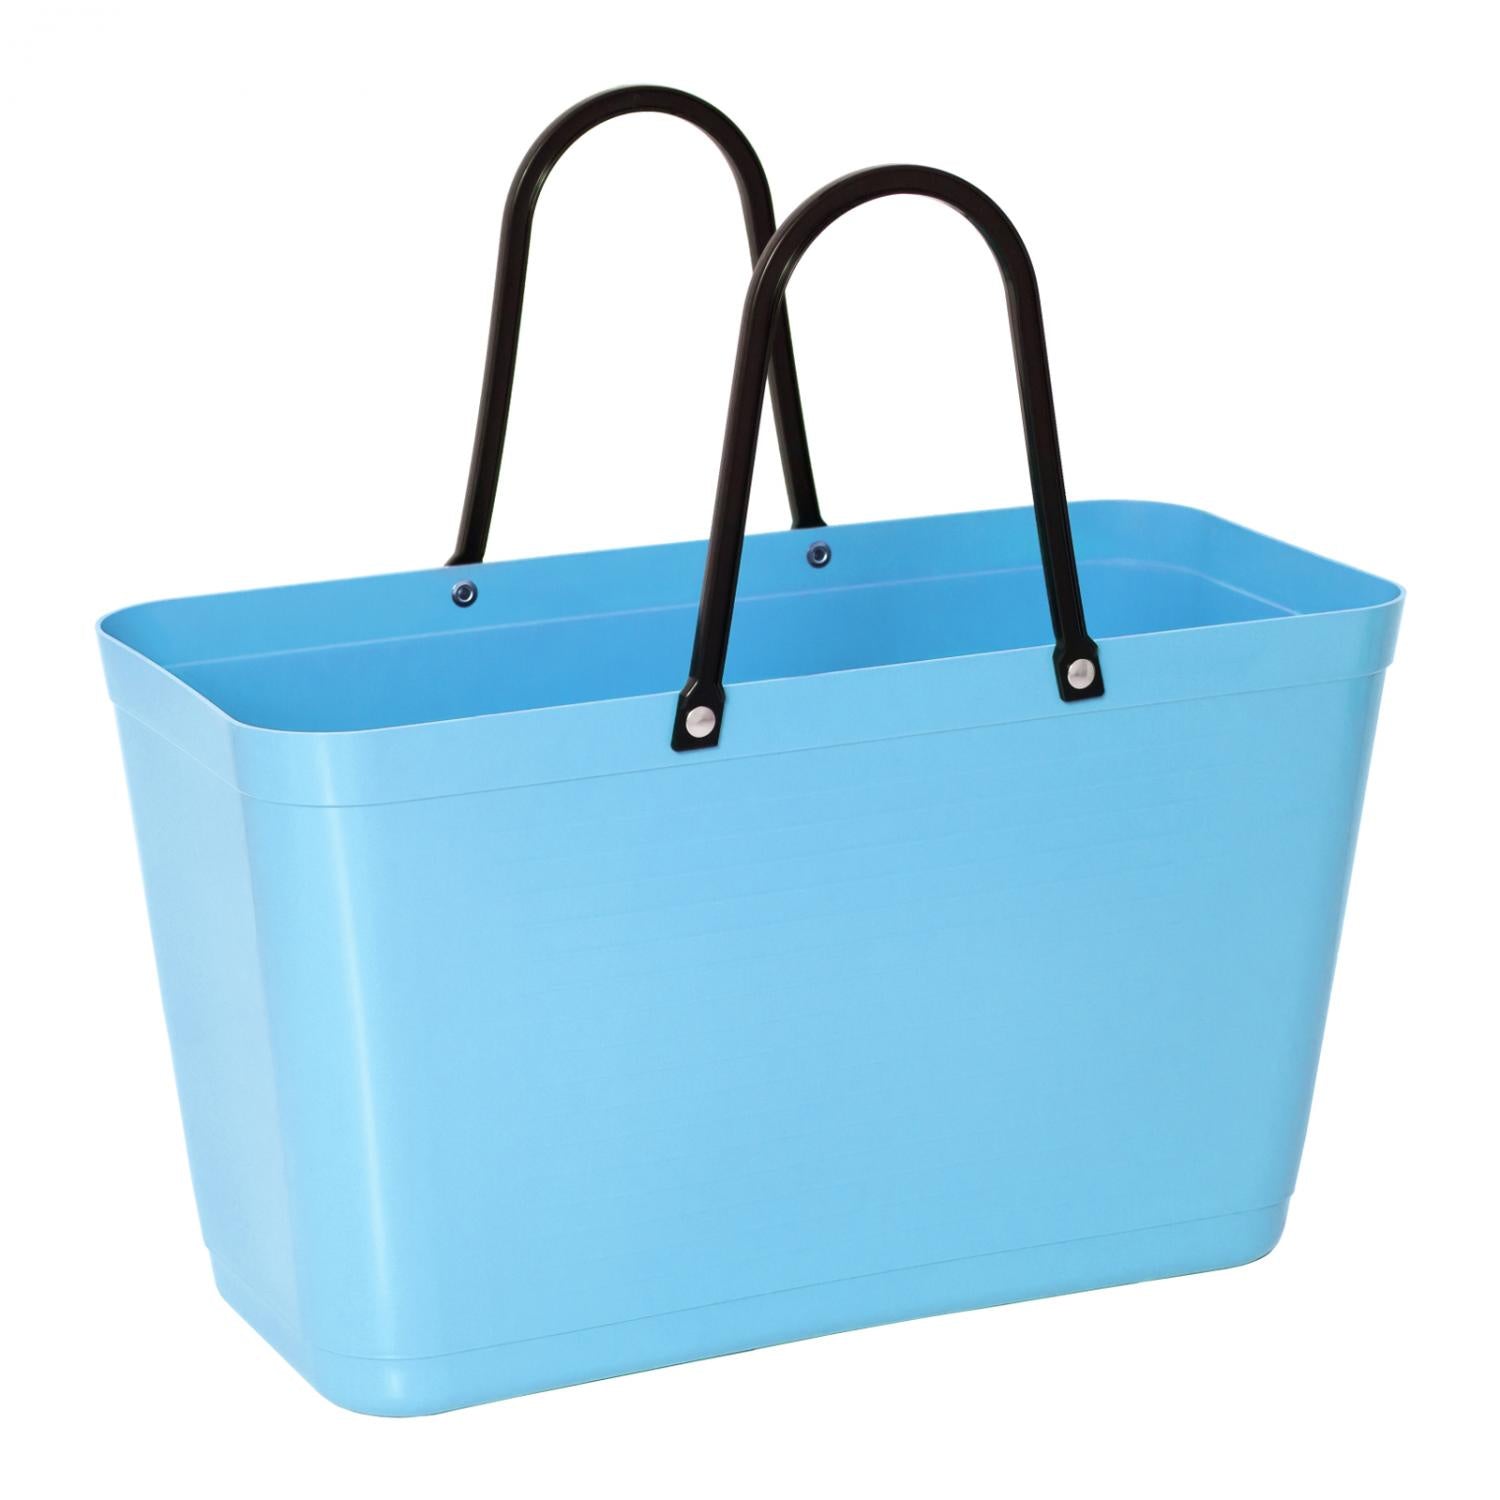 Hinza Basket Bag Large - Light Blue